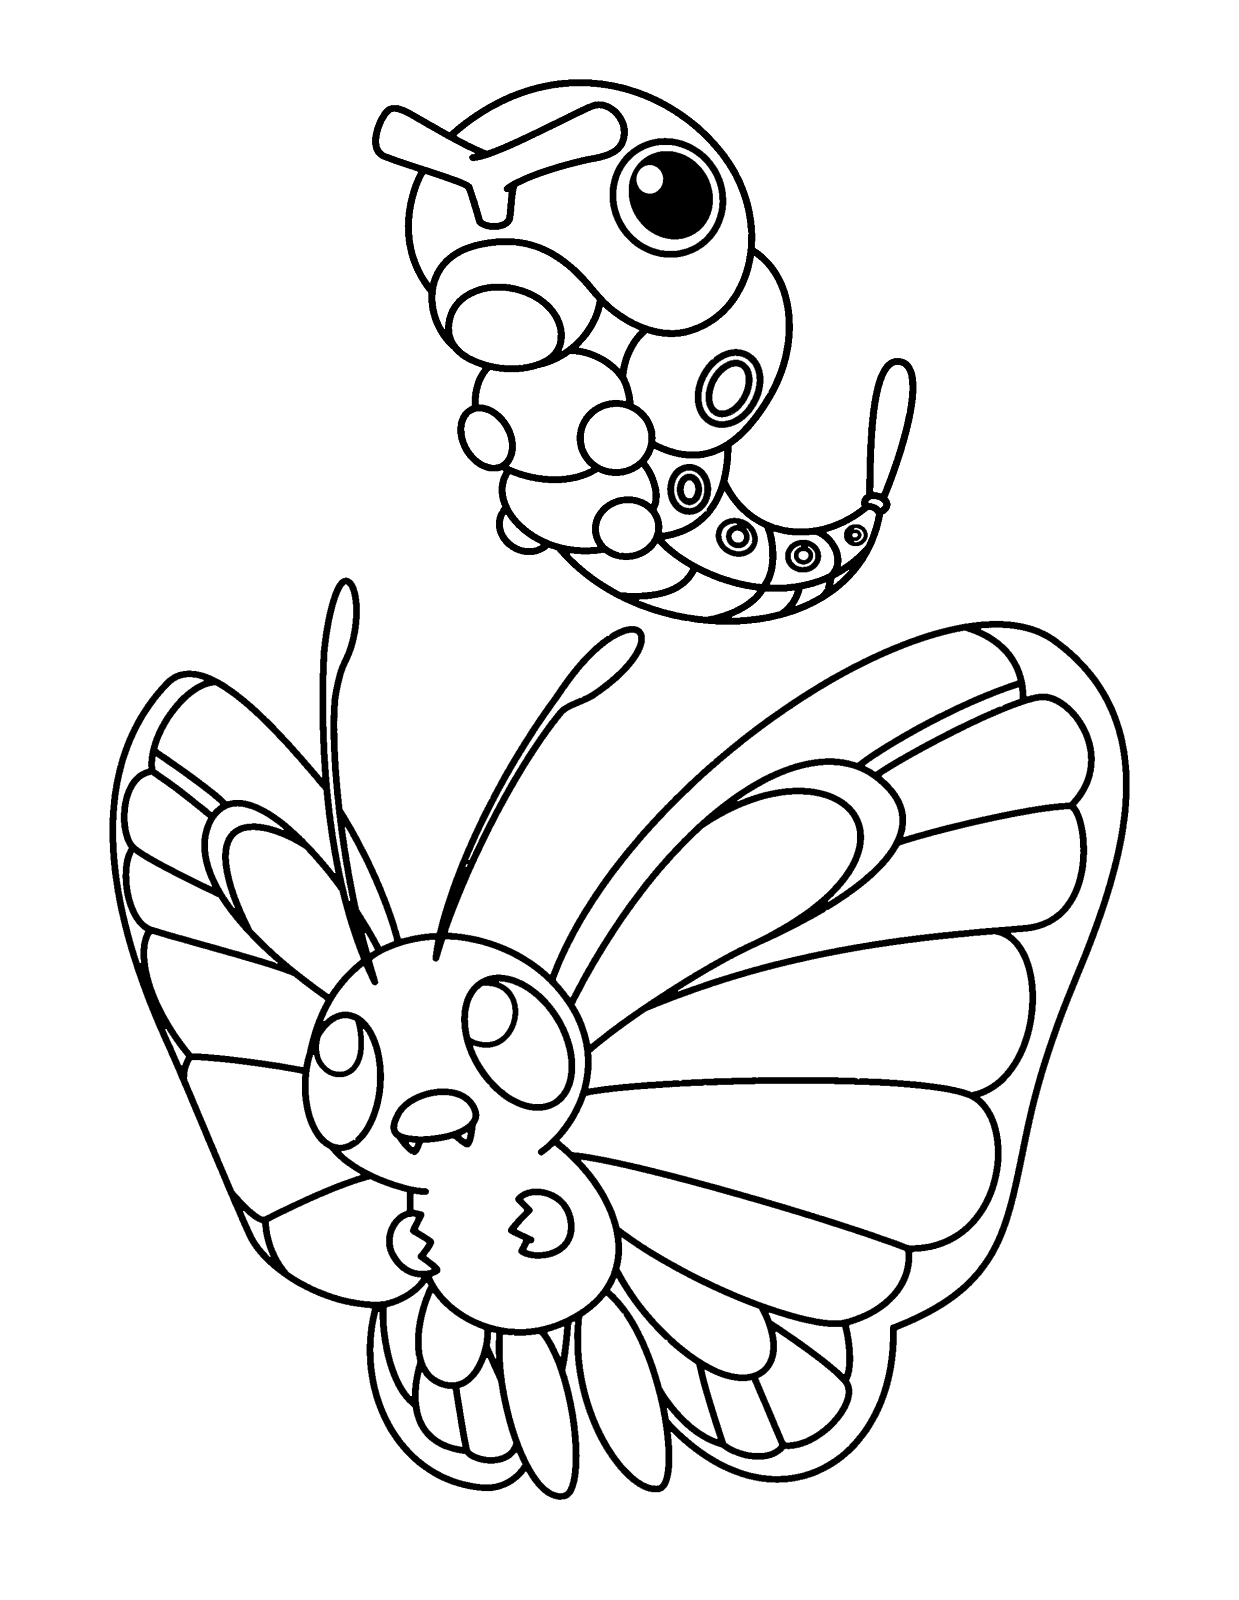 Pokémon - Gen. 1 - Butterfree assieme a Caterpie